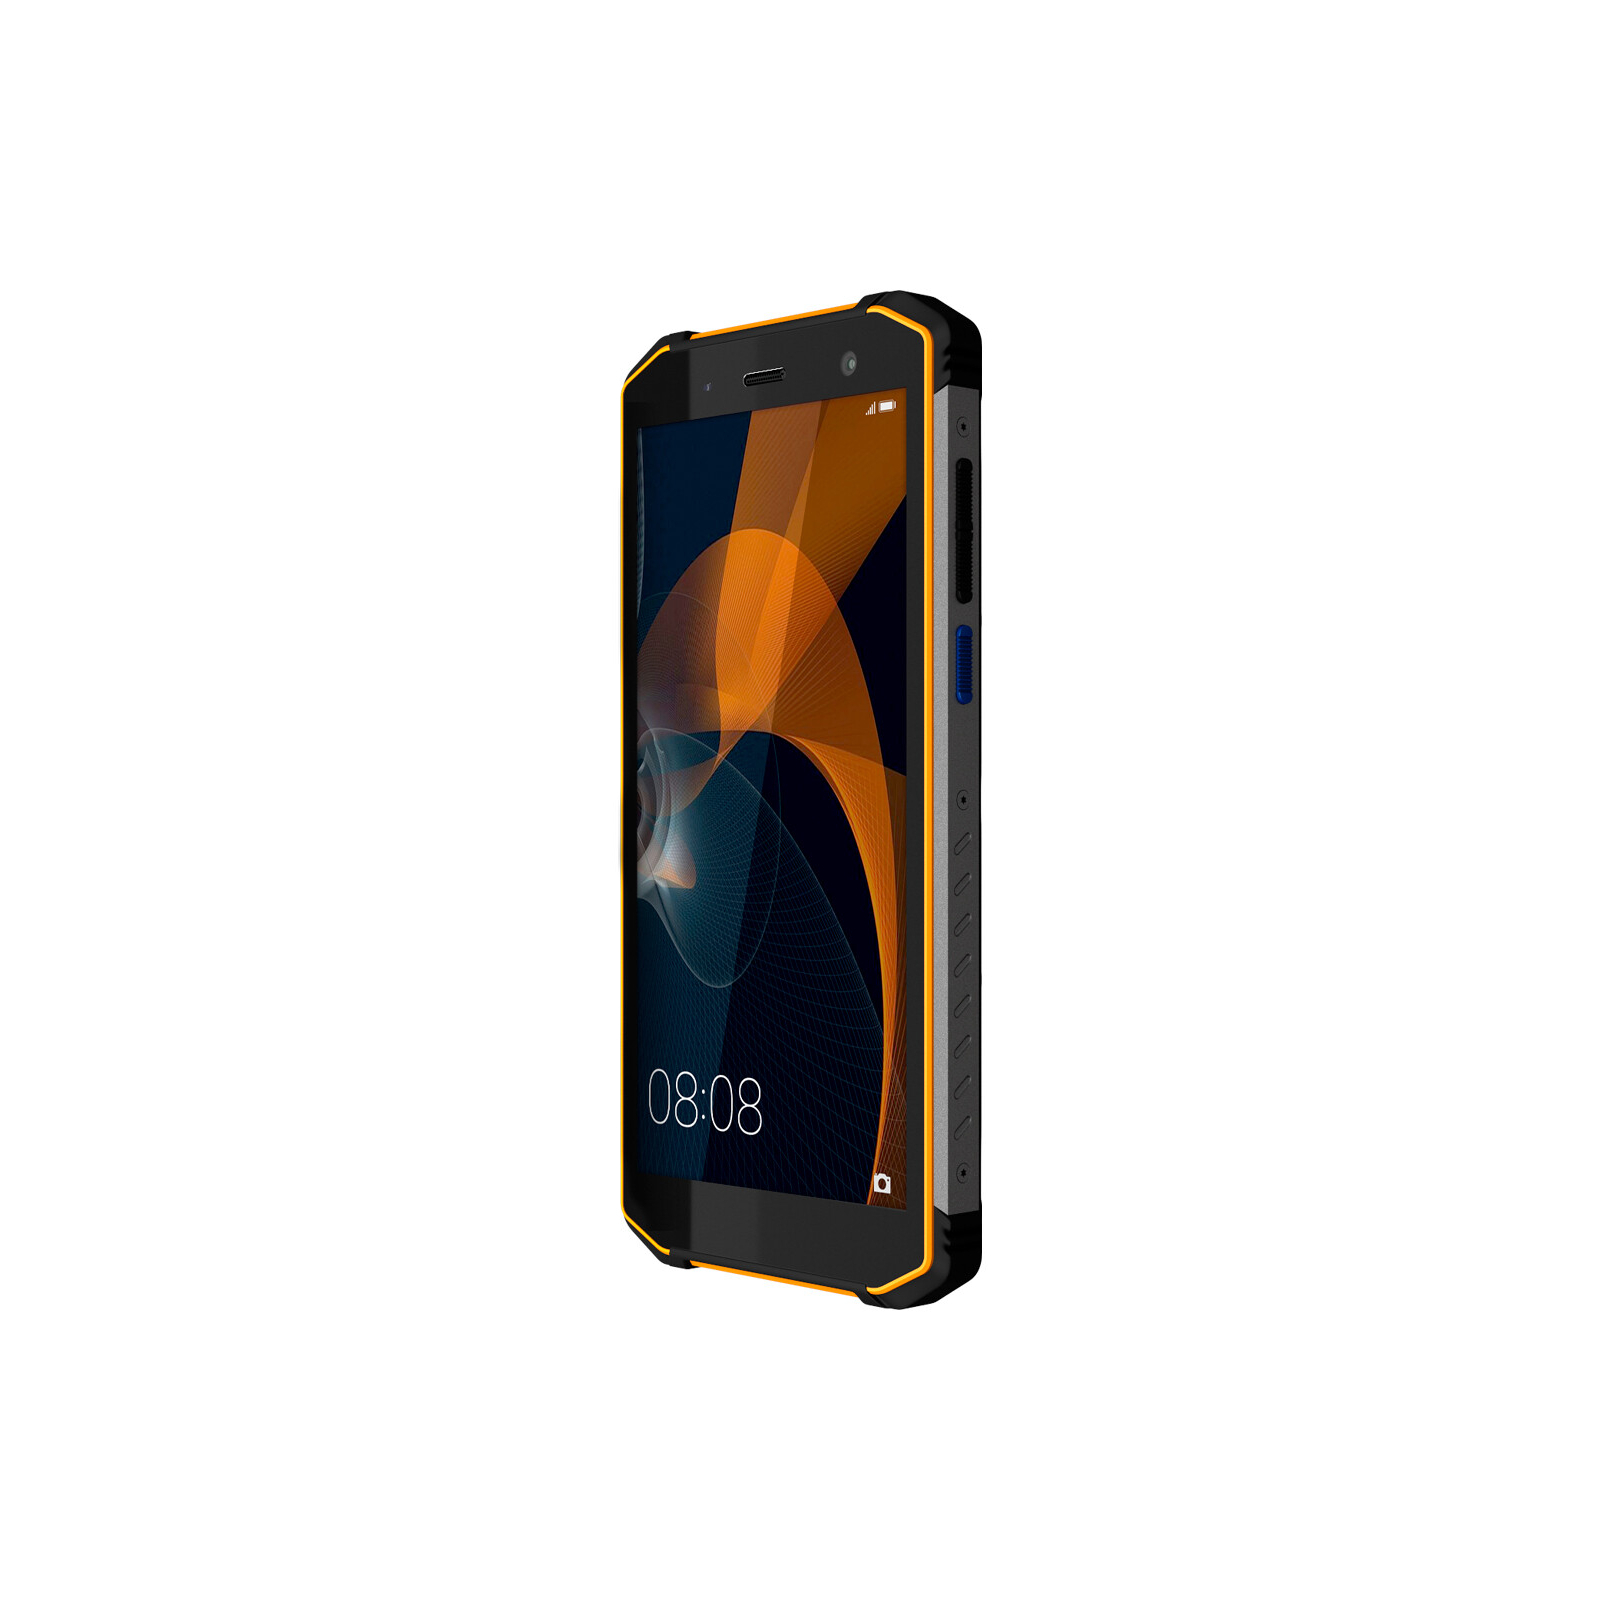 Мобильный телефон Sigma X-treme PQ36 Black Orange (4827798865224) изображение 3